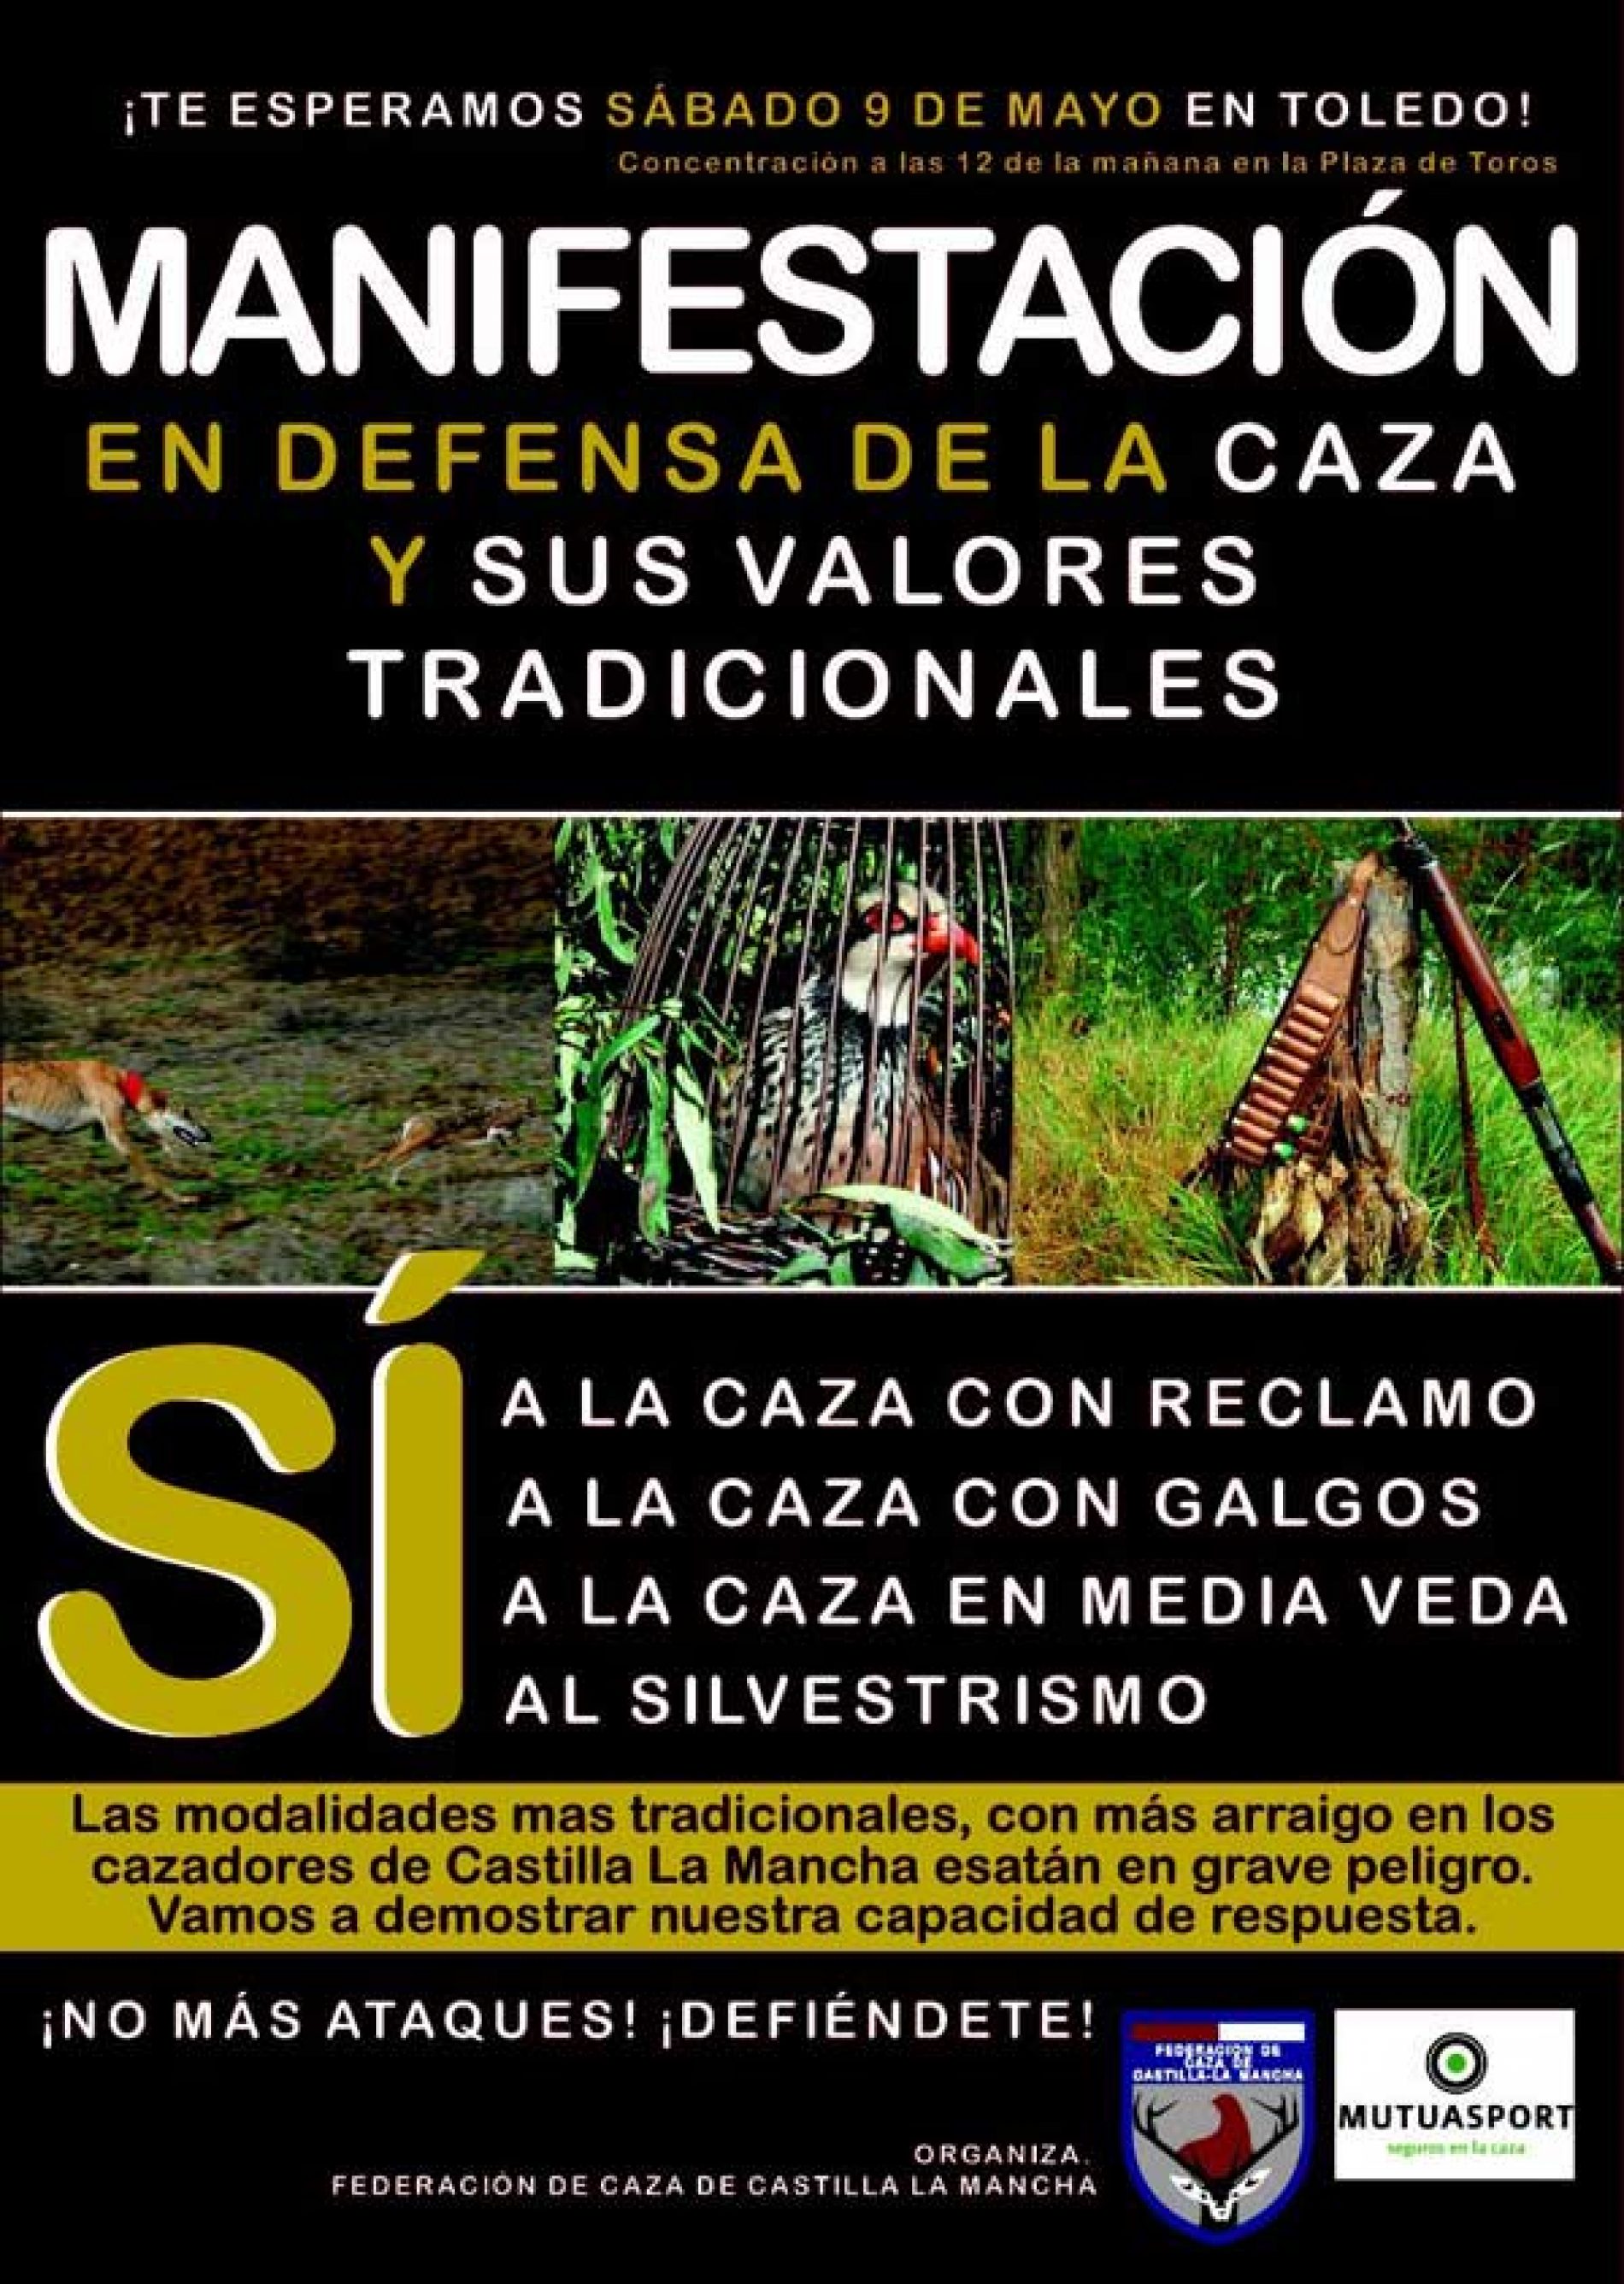 Manifestación en apoyo a la caza, 9 de mayo en Toledo